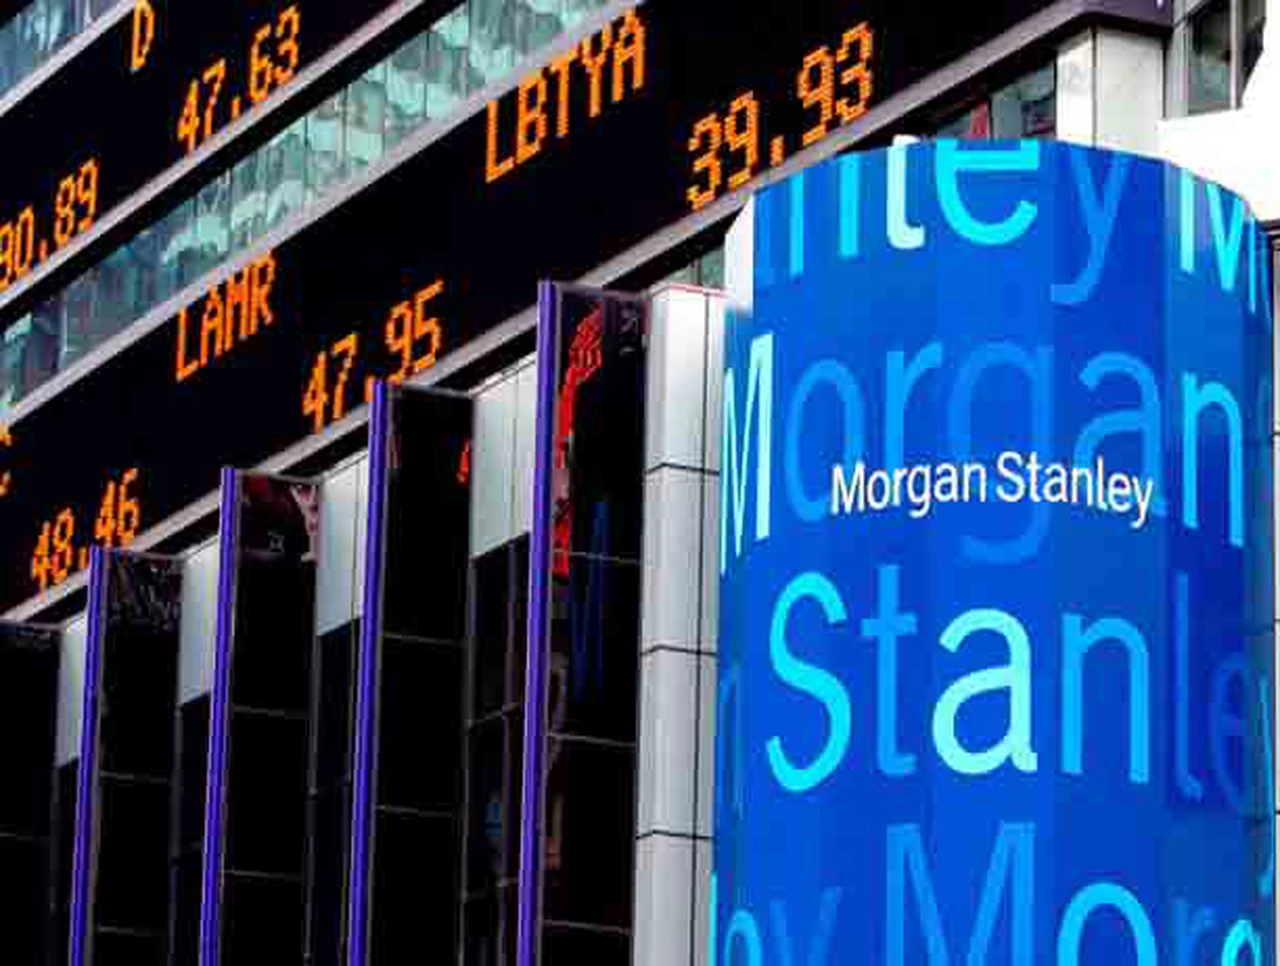 Morgan Stanley habla de "dolores de corto plazo" con esperanzas de crecimiento a futuro para el país